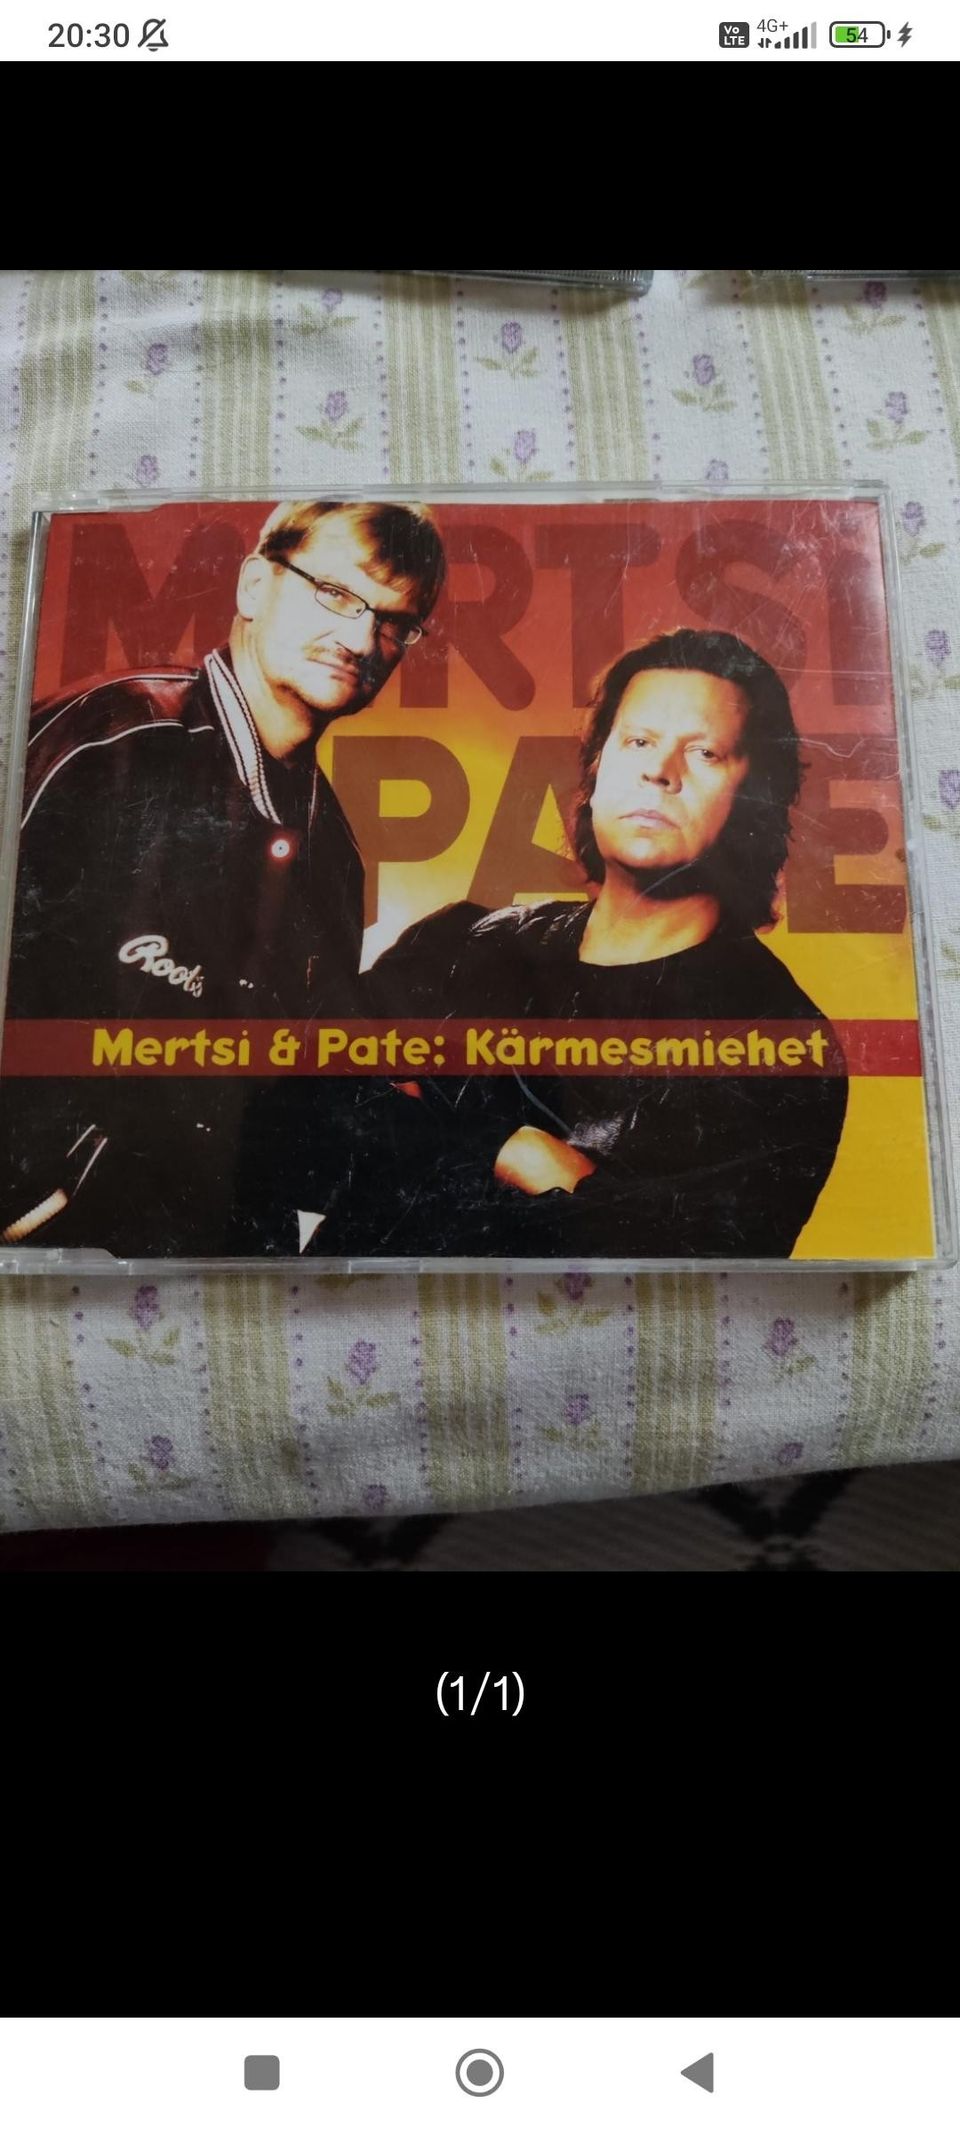 Mertsi & Pate Kärmesmiehet Single CD